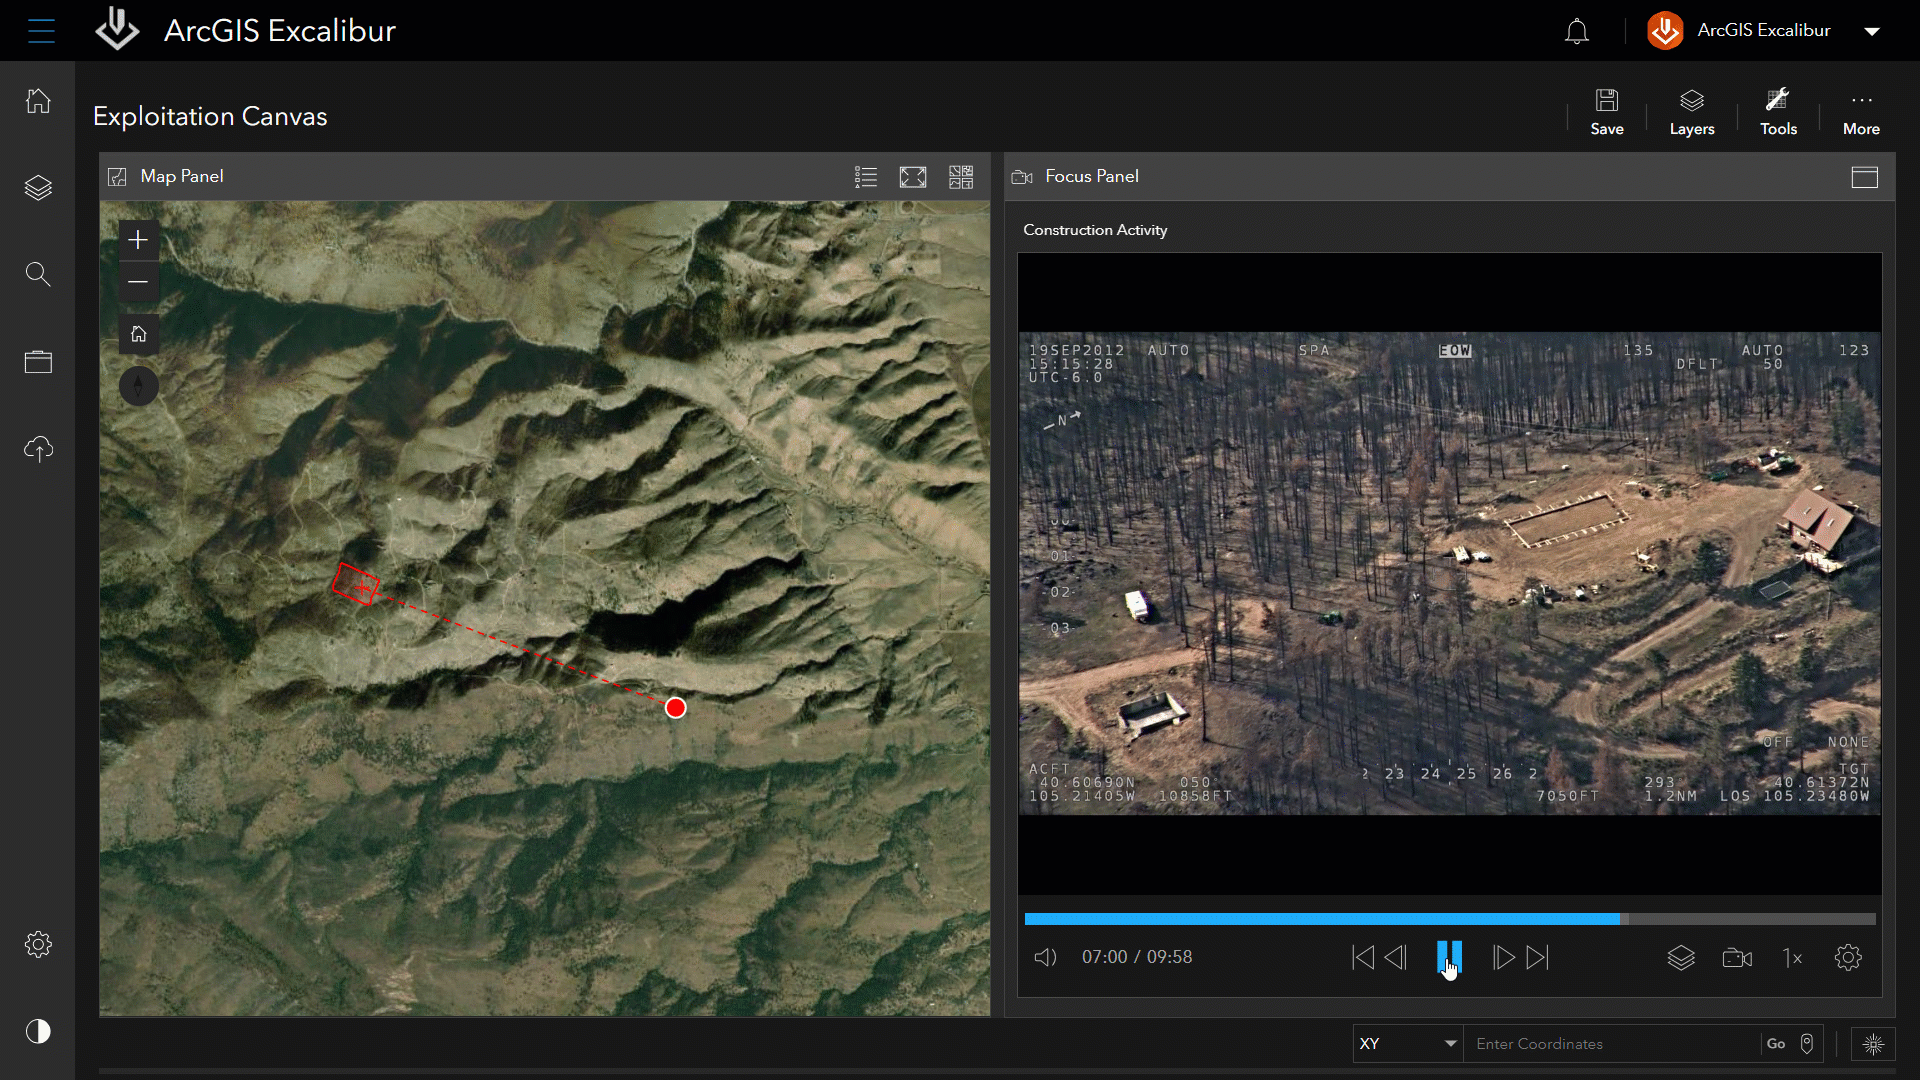 Interfaccia di ArcGIS Excalibur che presenta un'immagine del suolo a sinistra e un video in movimento di terra e alberi a destra.